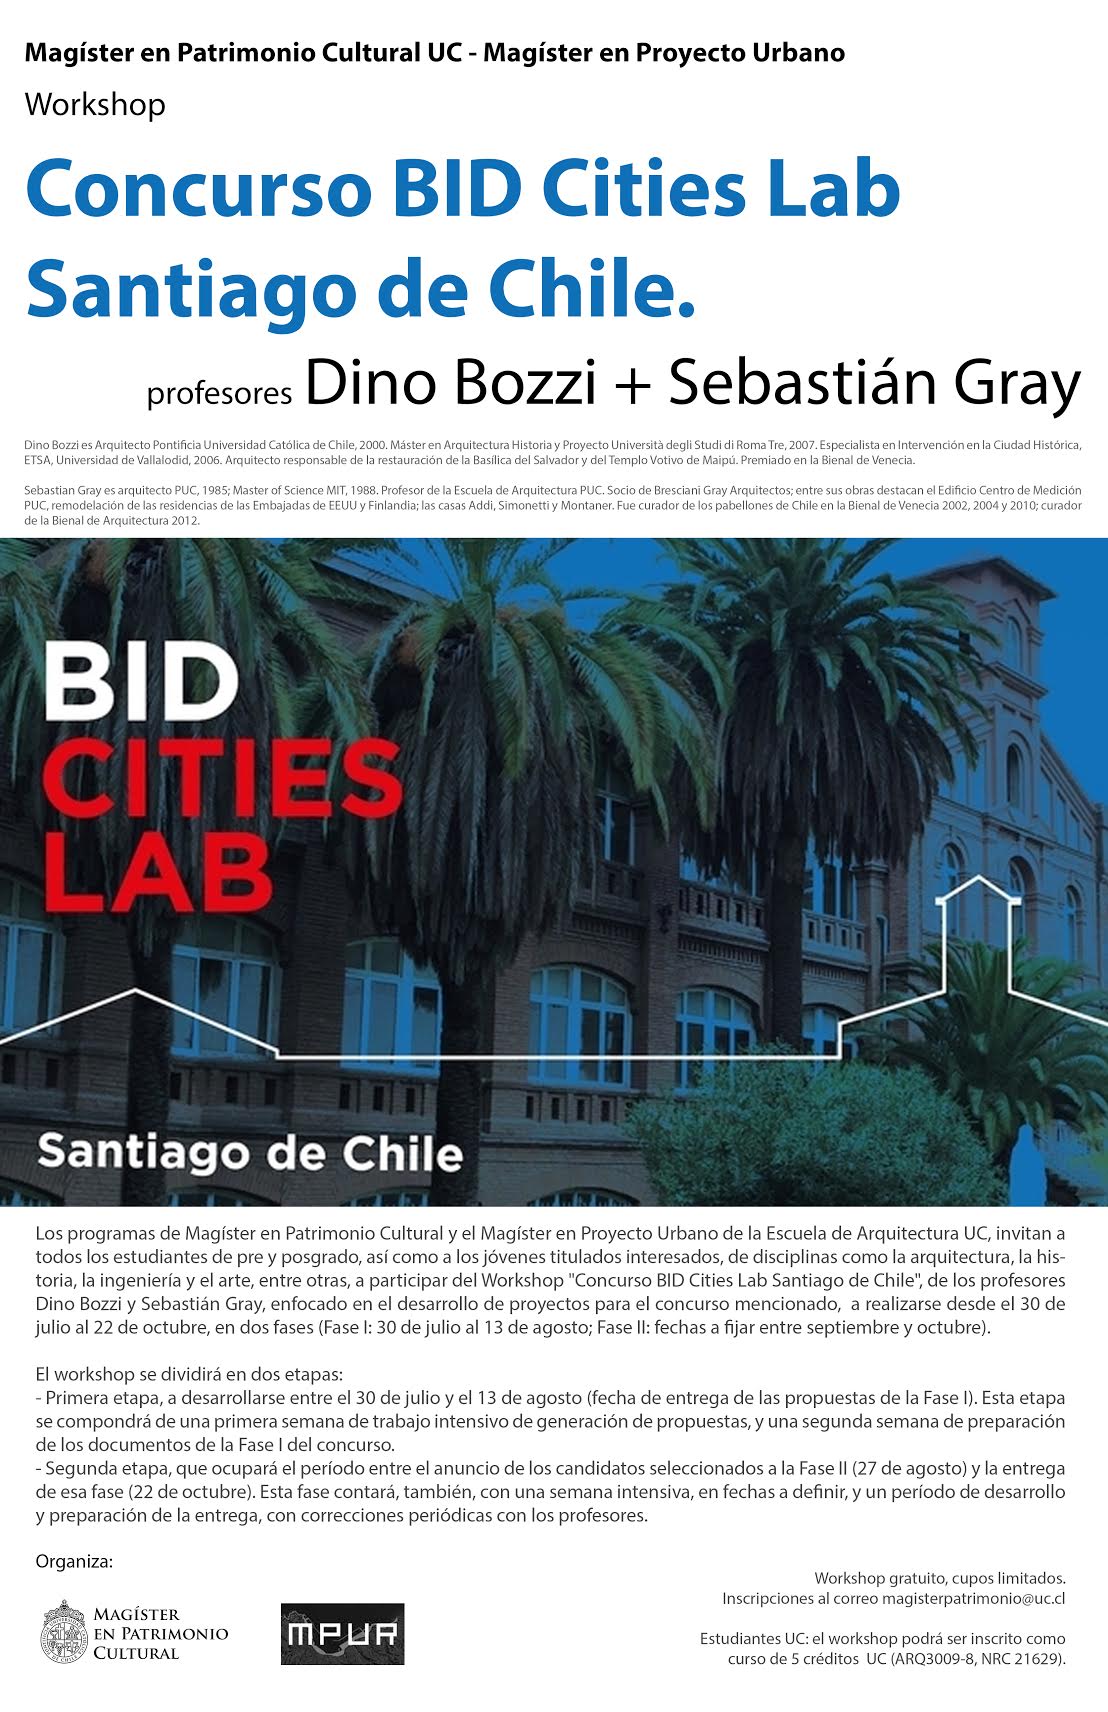 18-07y08_Workshop_Concurso_BID_Cities_Lab_Santiago_de_Chile.jpg